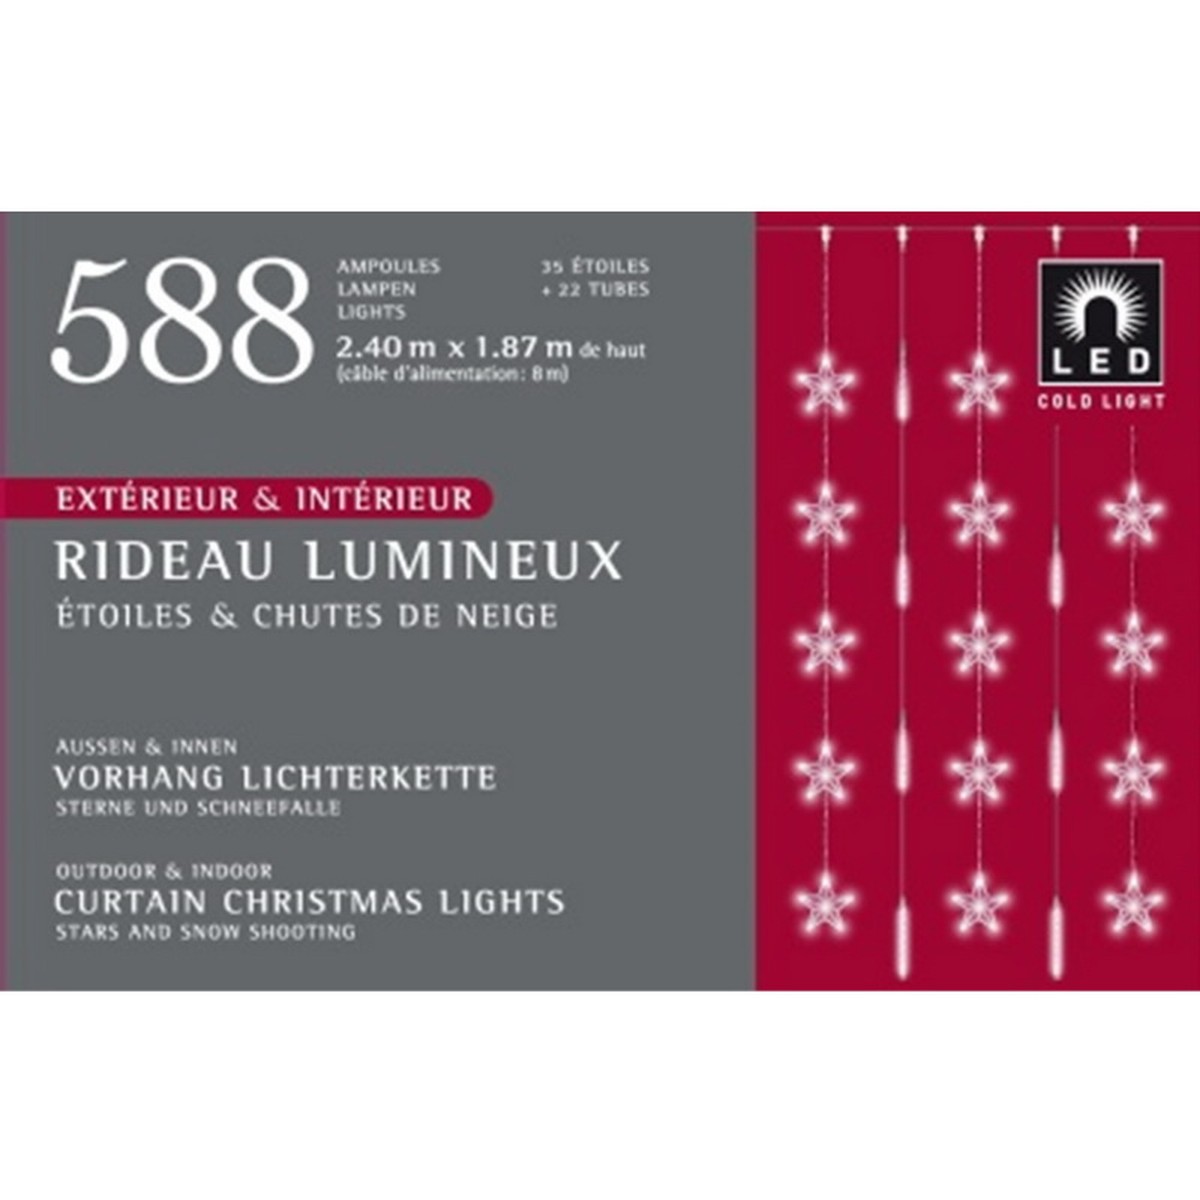   Rideau lumineux Int./Ext. LED 588L. Etoiles fixes et Chutes de neiges 588L. LED  826 ampoules